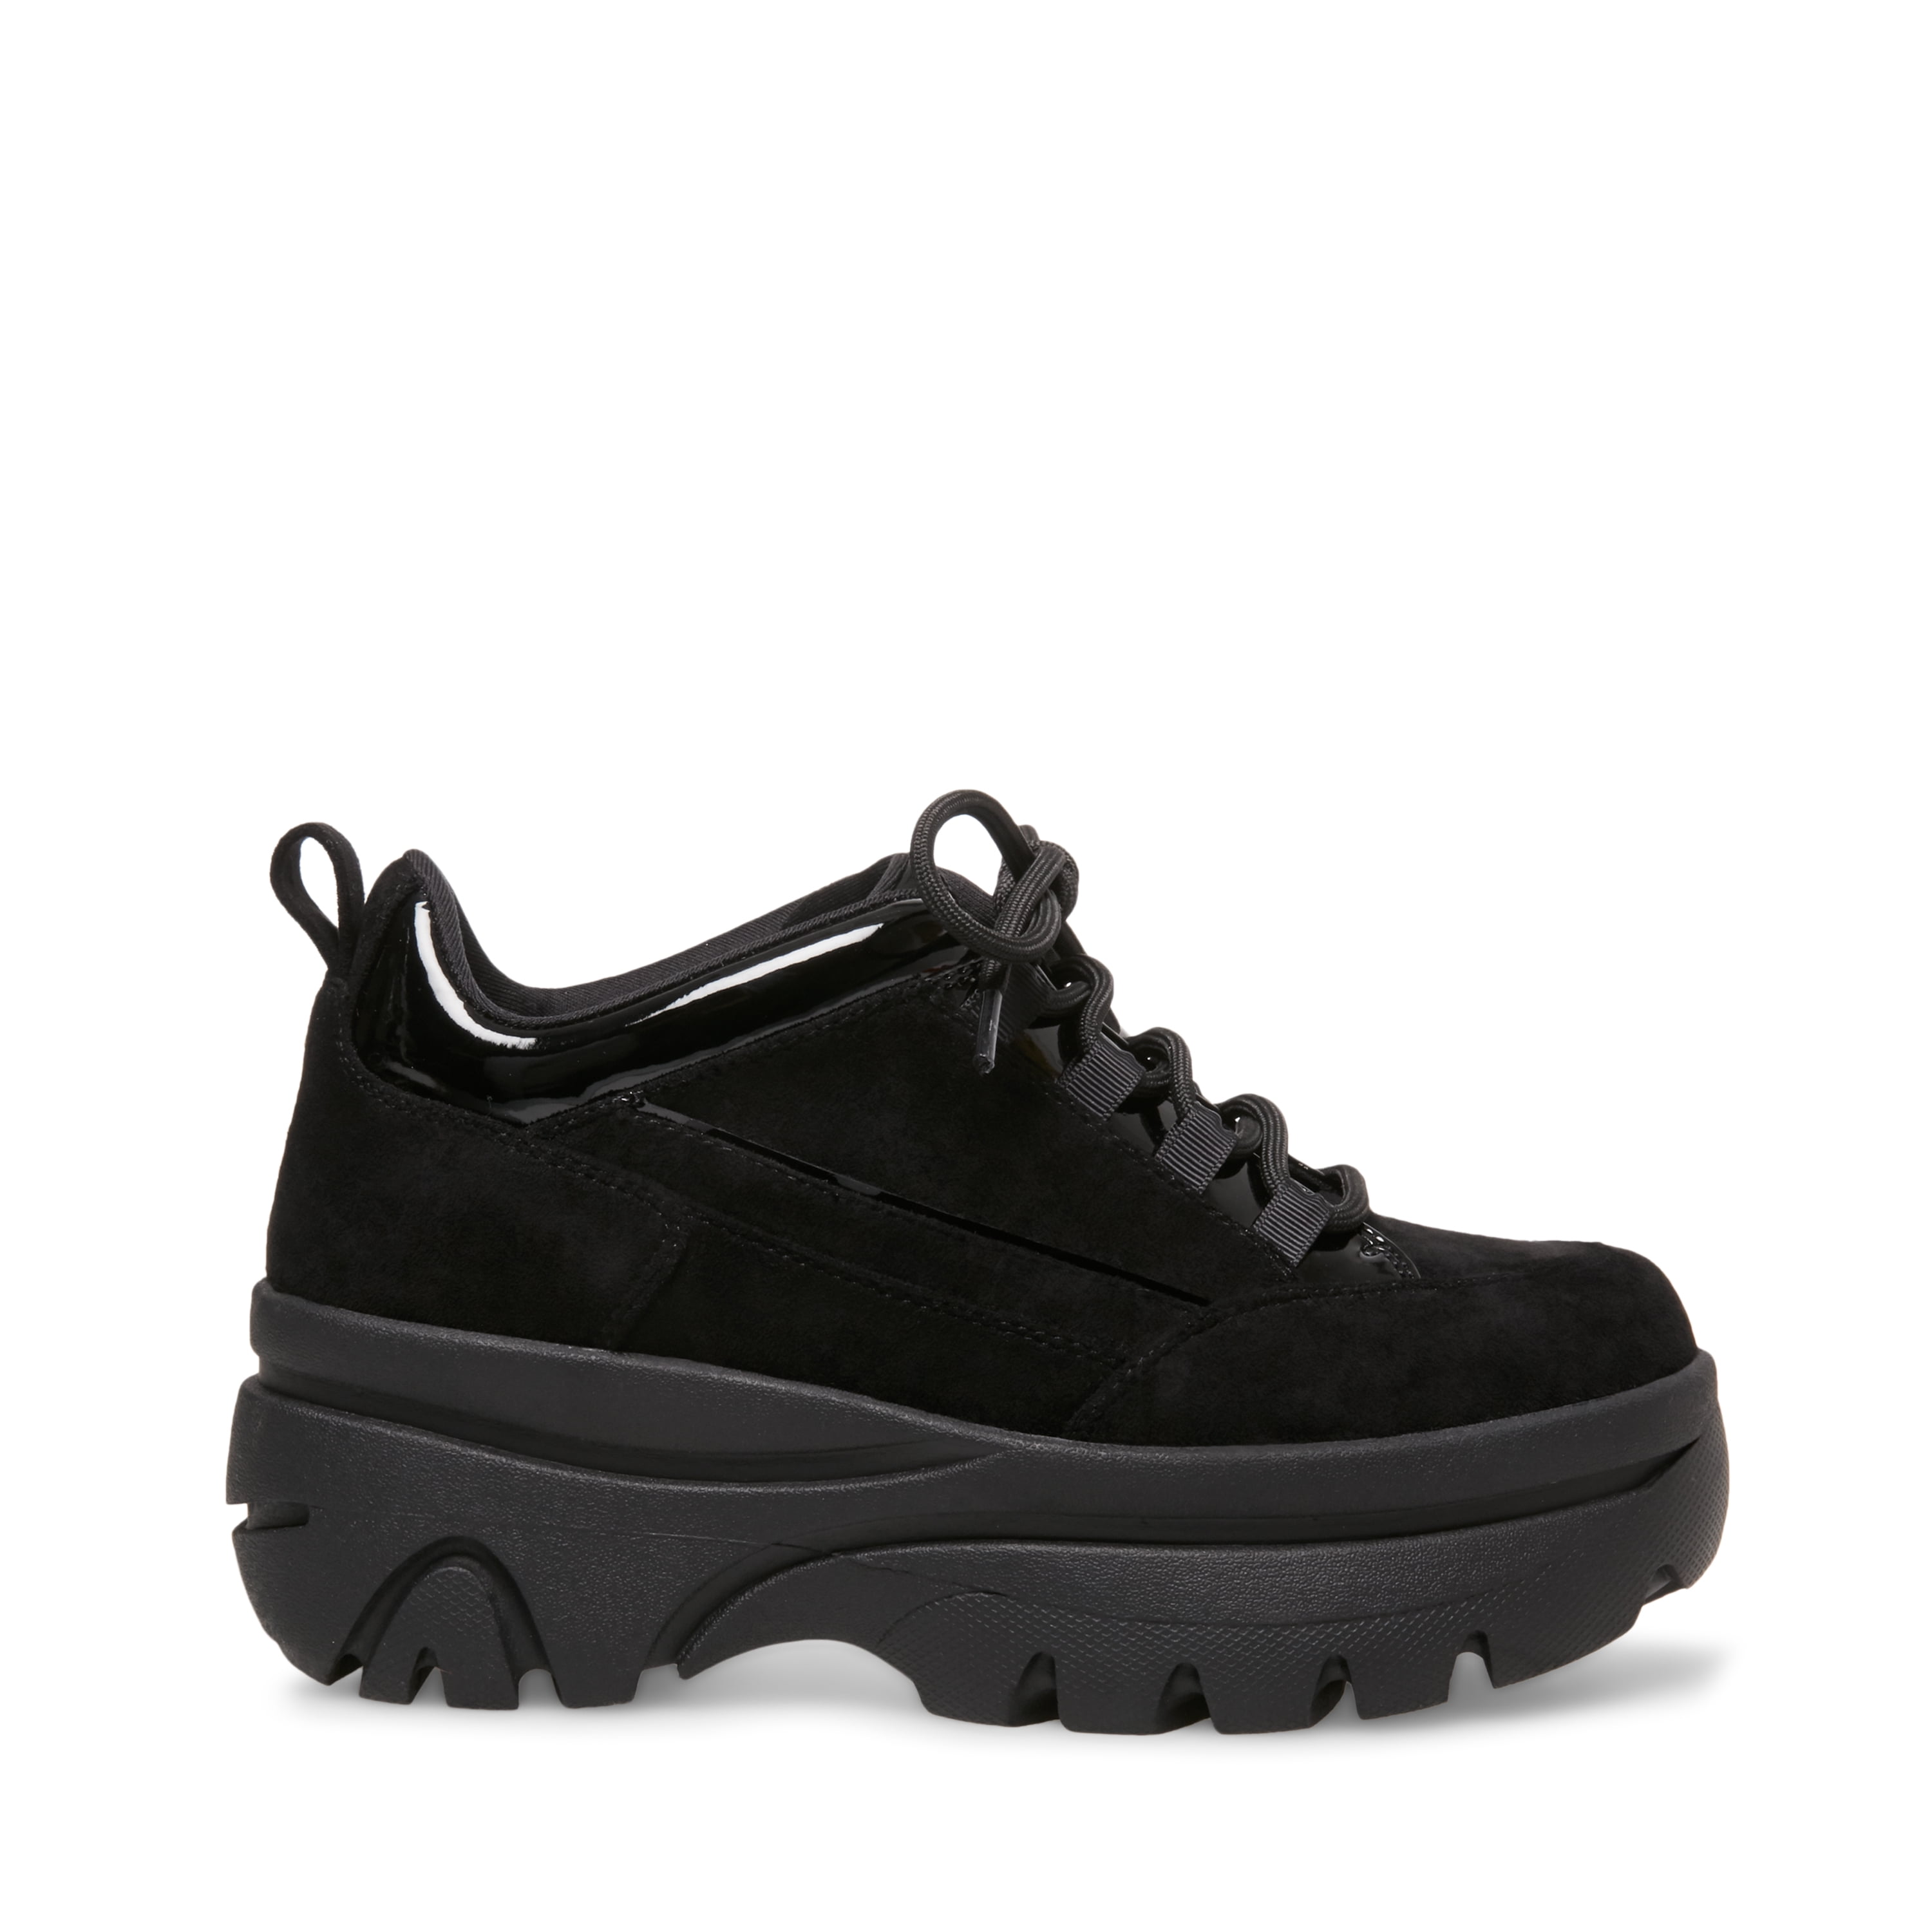 Madden Girl Bounce Platform Sneaker in Black